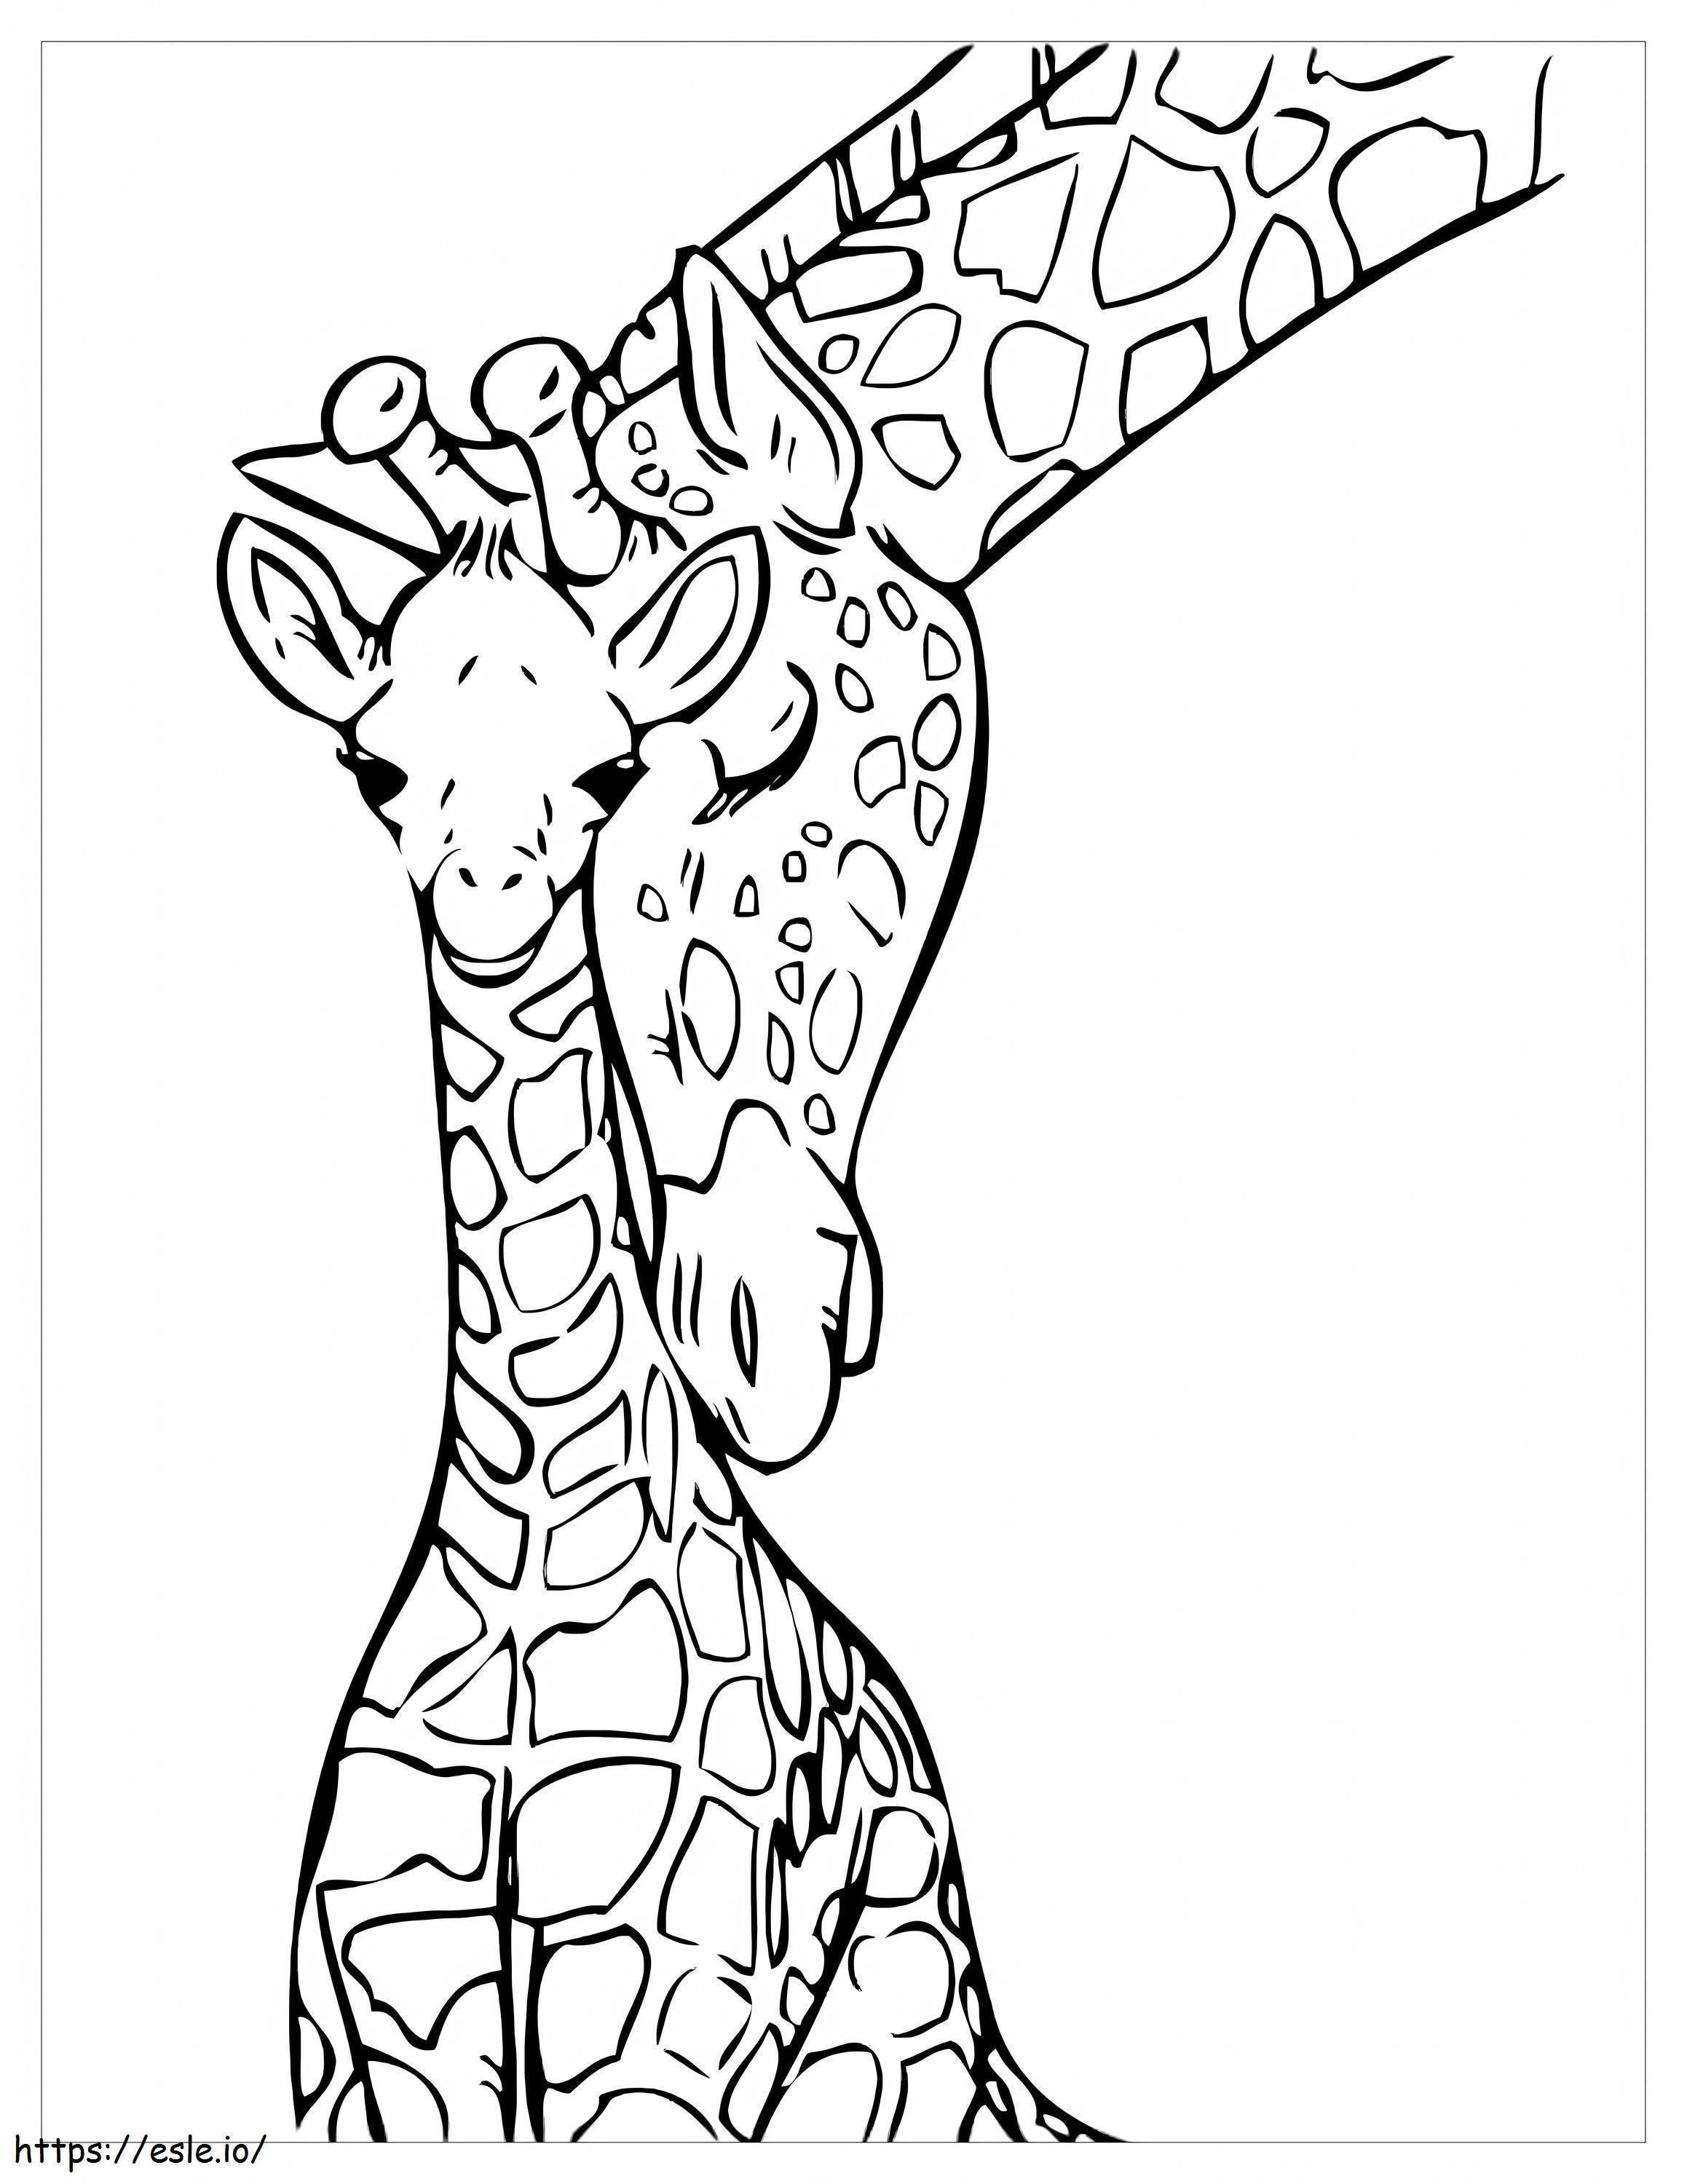 Giraffa per bambini da colorare